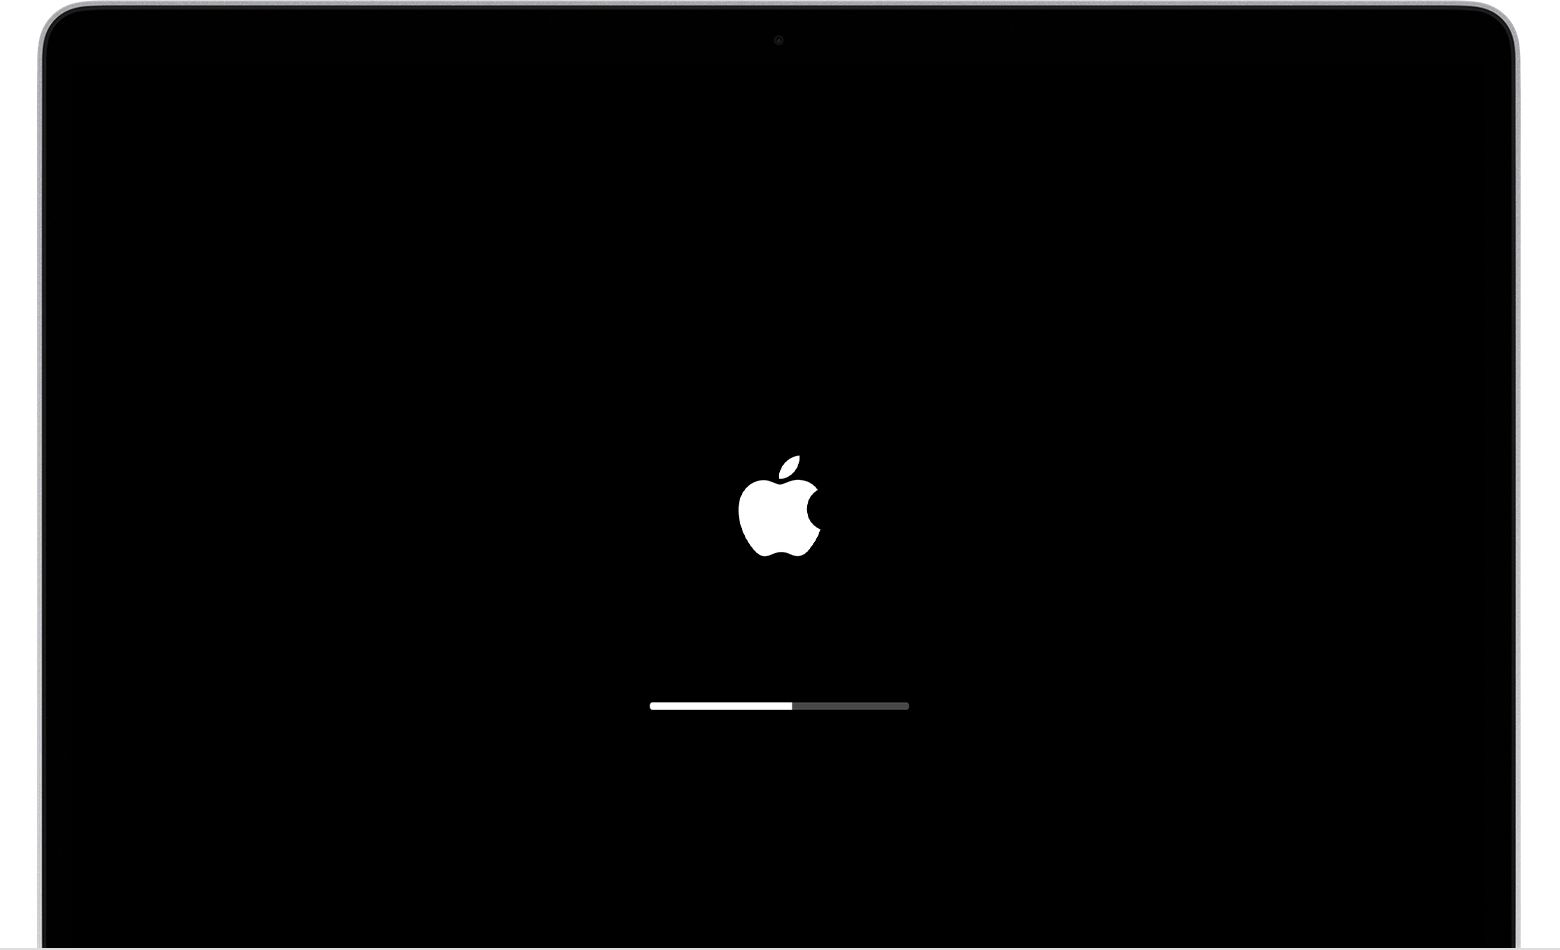 Apple TV stuck on Apple logo